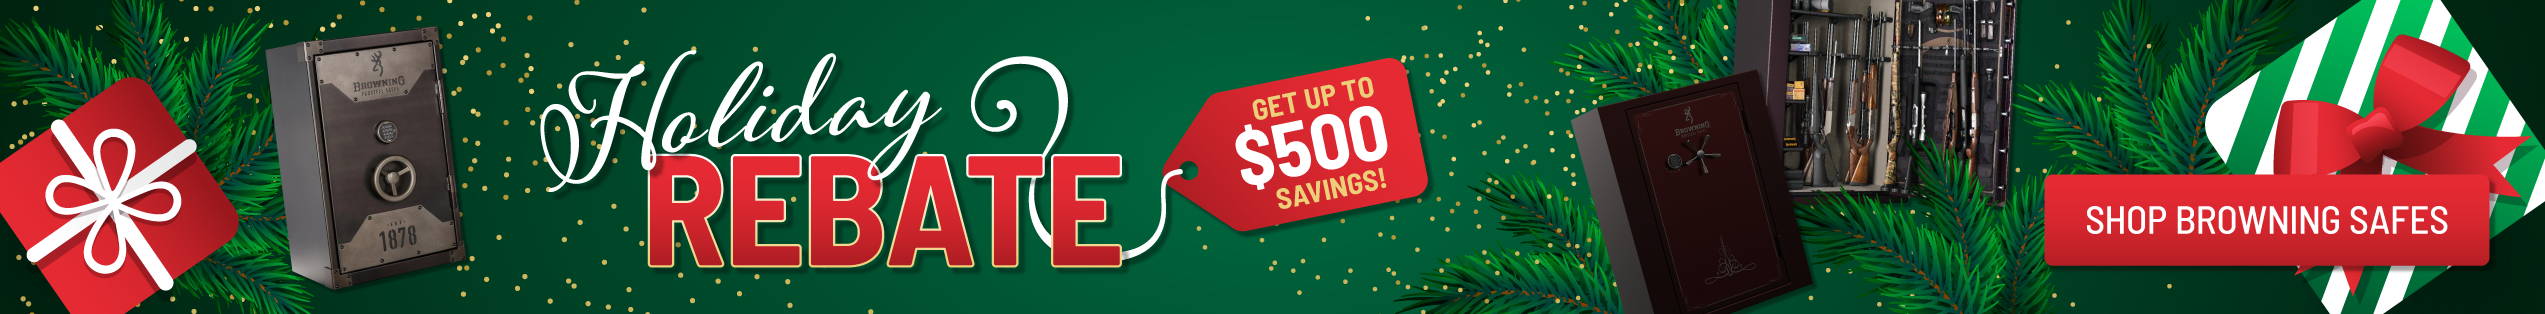 Browning Holiday Rebate - Get up to $500 Savings